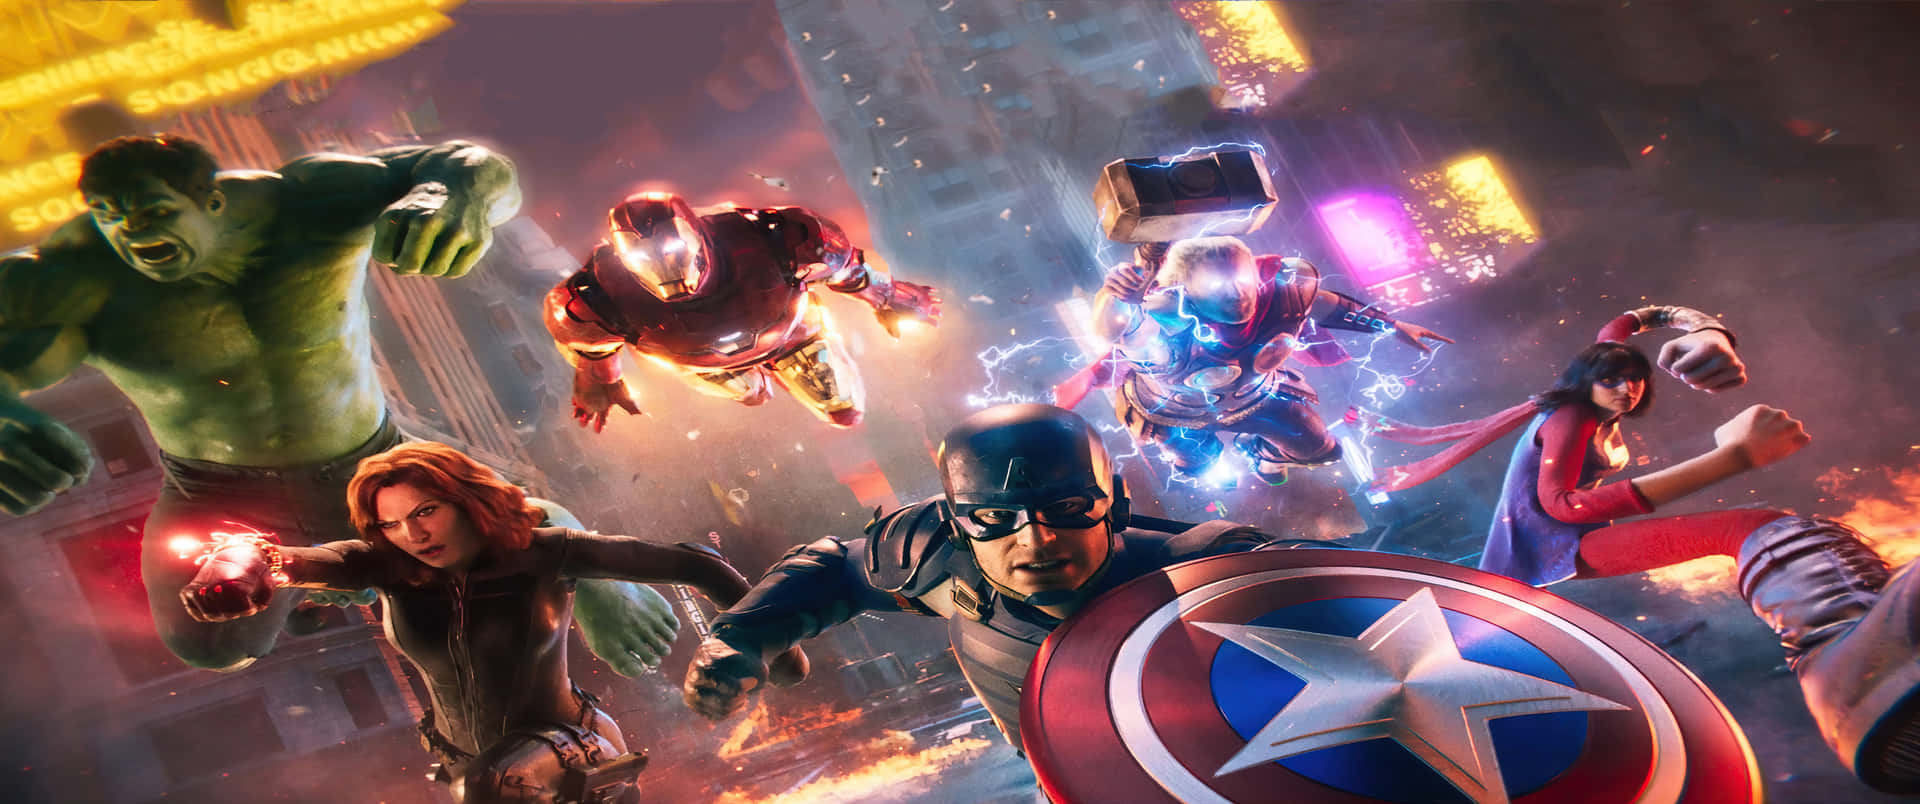 Marvel Superheroes Gather Together Wallpaper